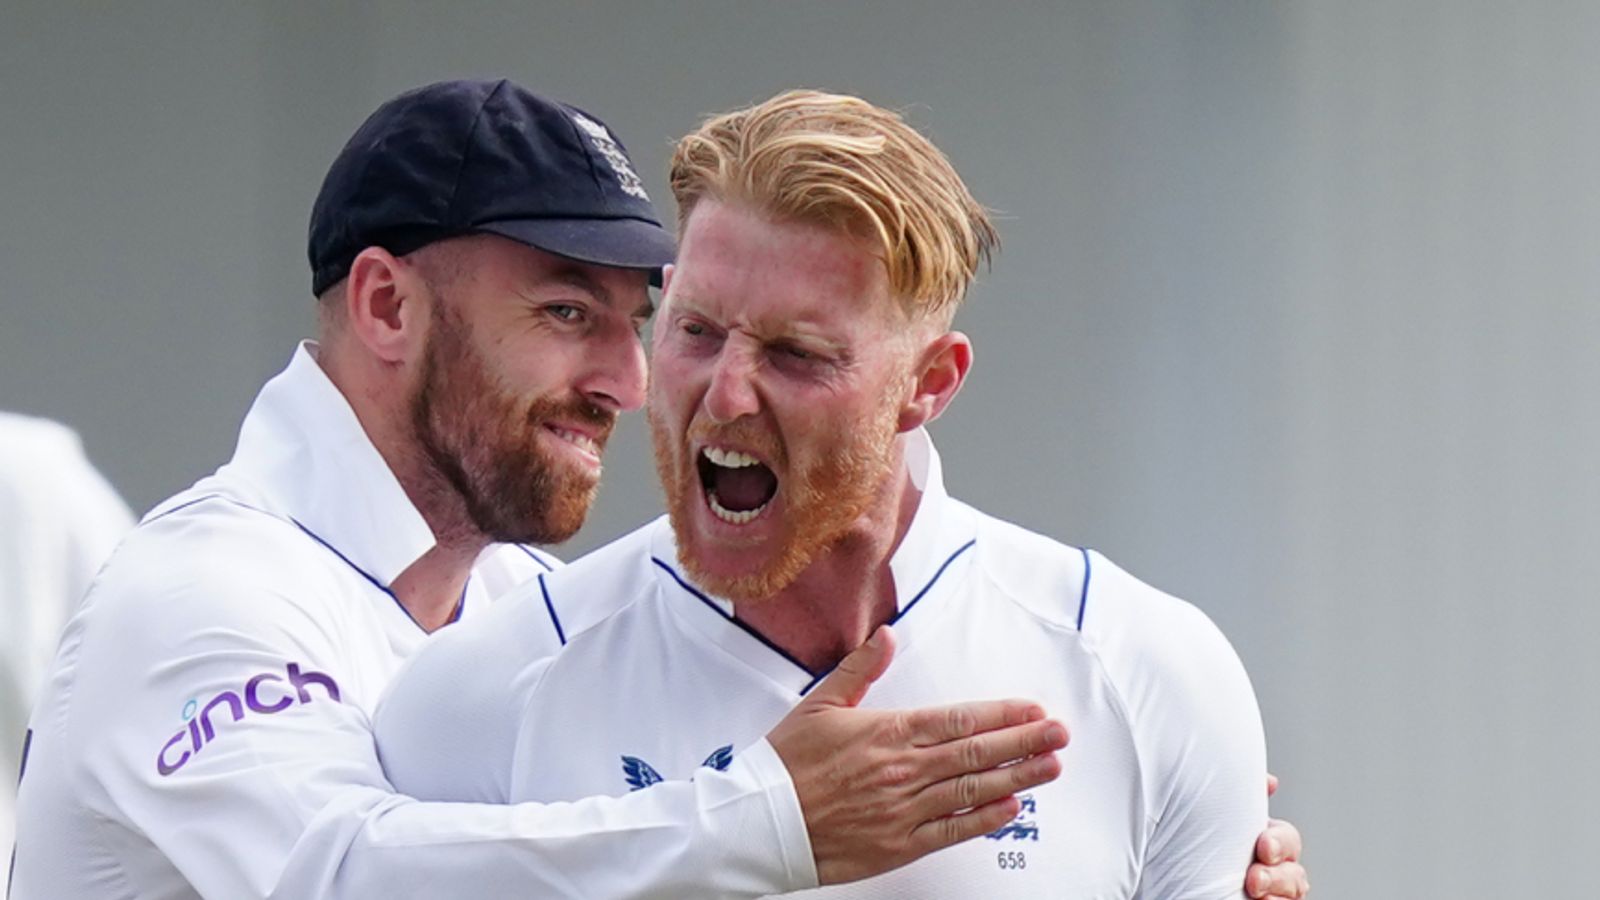 Inggris badai setelah kemenangan inning atas Afrika Selatan setelah serangan ganda dari kapten Ben Stokes setelah teh |  Berita Kriket